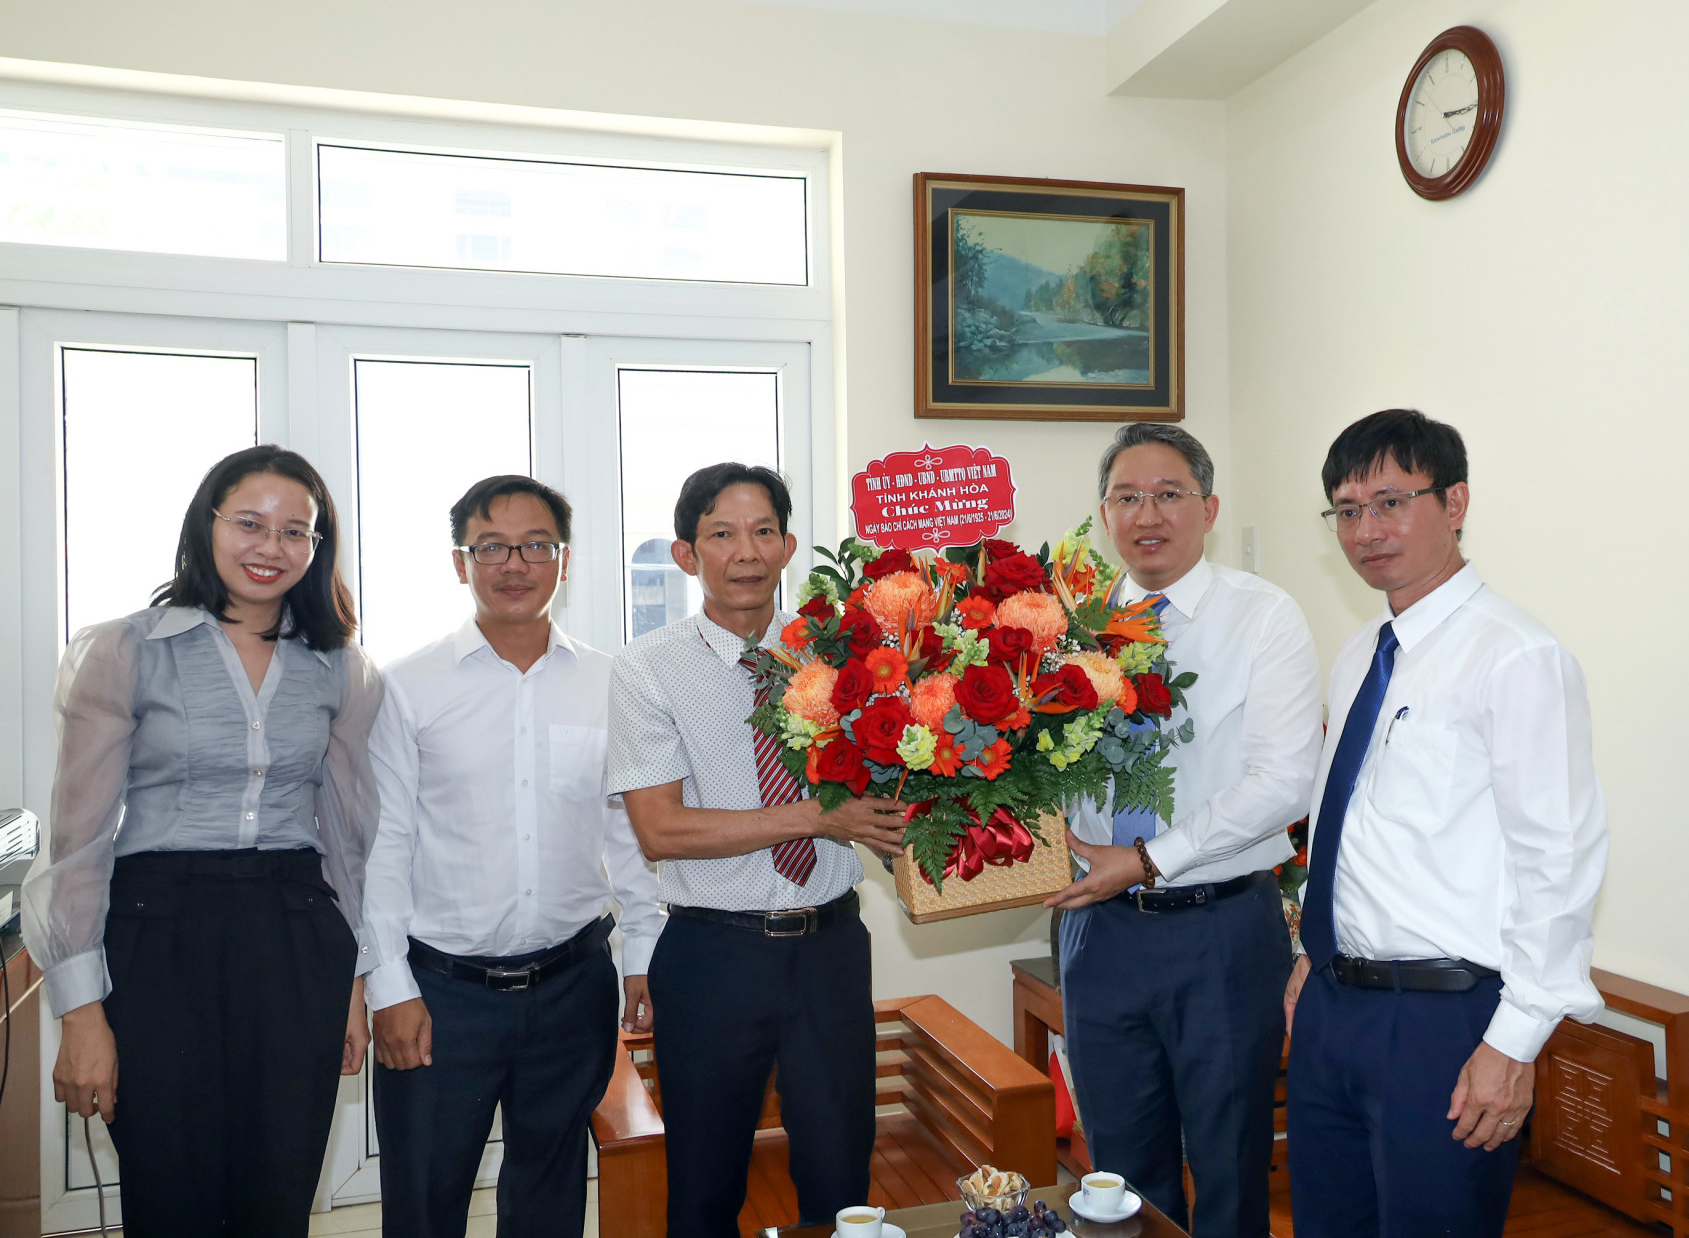 Bí thư Tỉnh ủy Nguyễn Hải Ninh tặng hoa chúc mừng lãnh đạo Cơ quan thường trú Thông tấn xã Việt Nam tại Khánh Hòa nhân Ngày Báo chí Cách mạng Việt Nam.
